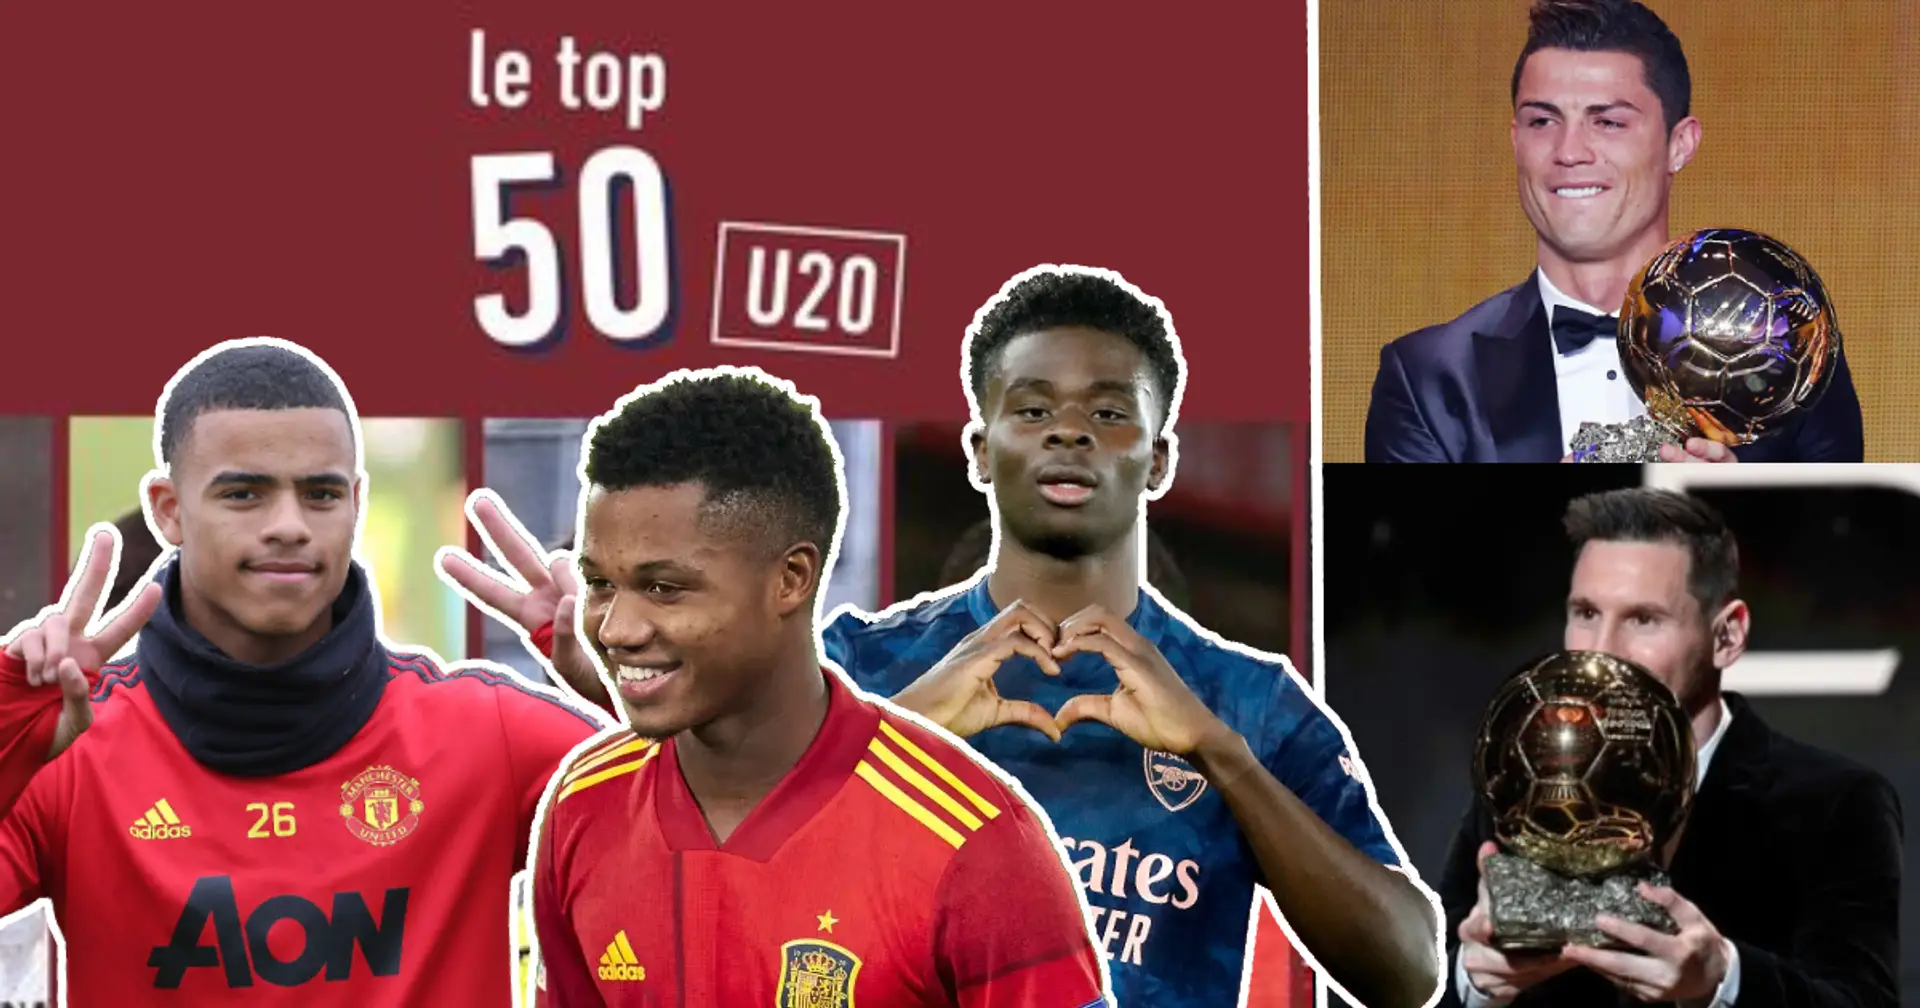 L'Equipe nennt die 10 besten Spieler unter 20 Jahren - sie sind die Zukunft des Fußballs